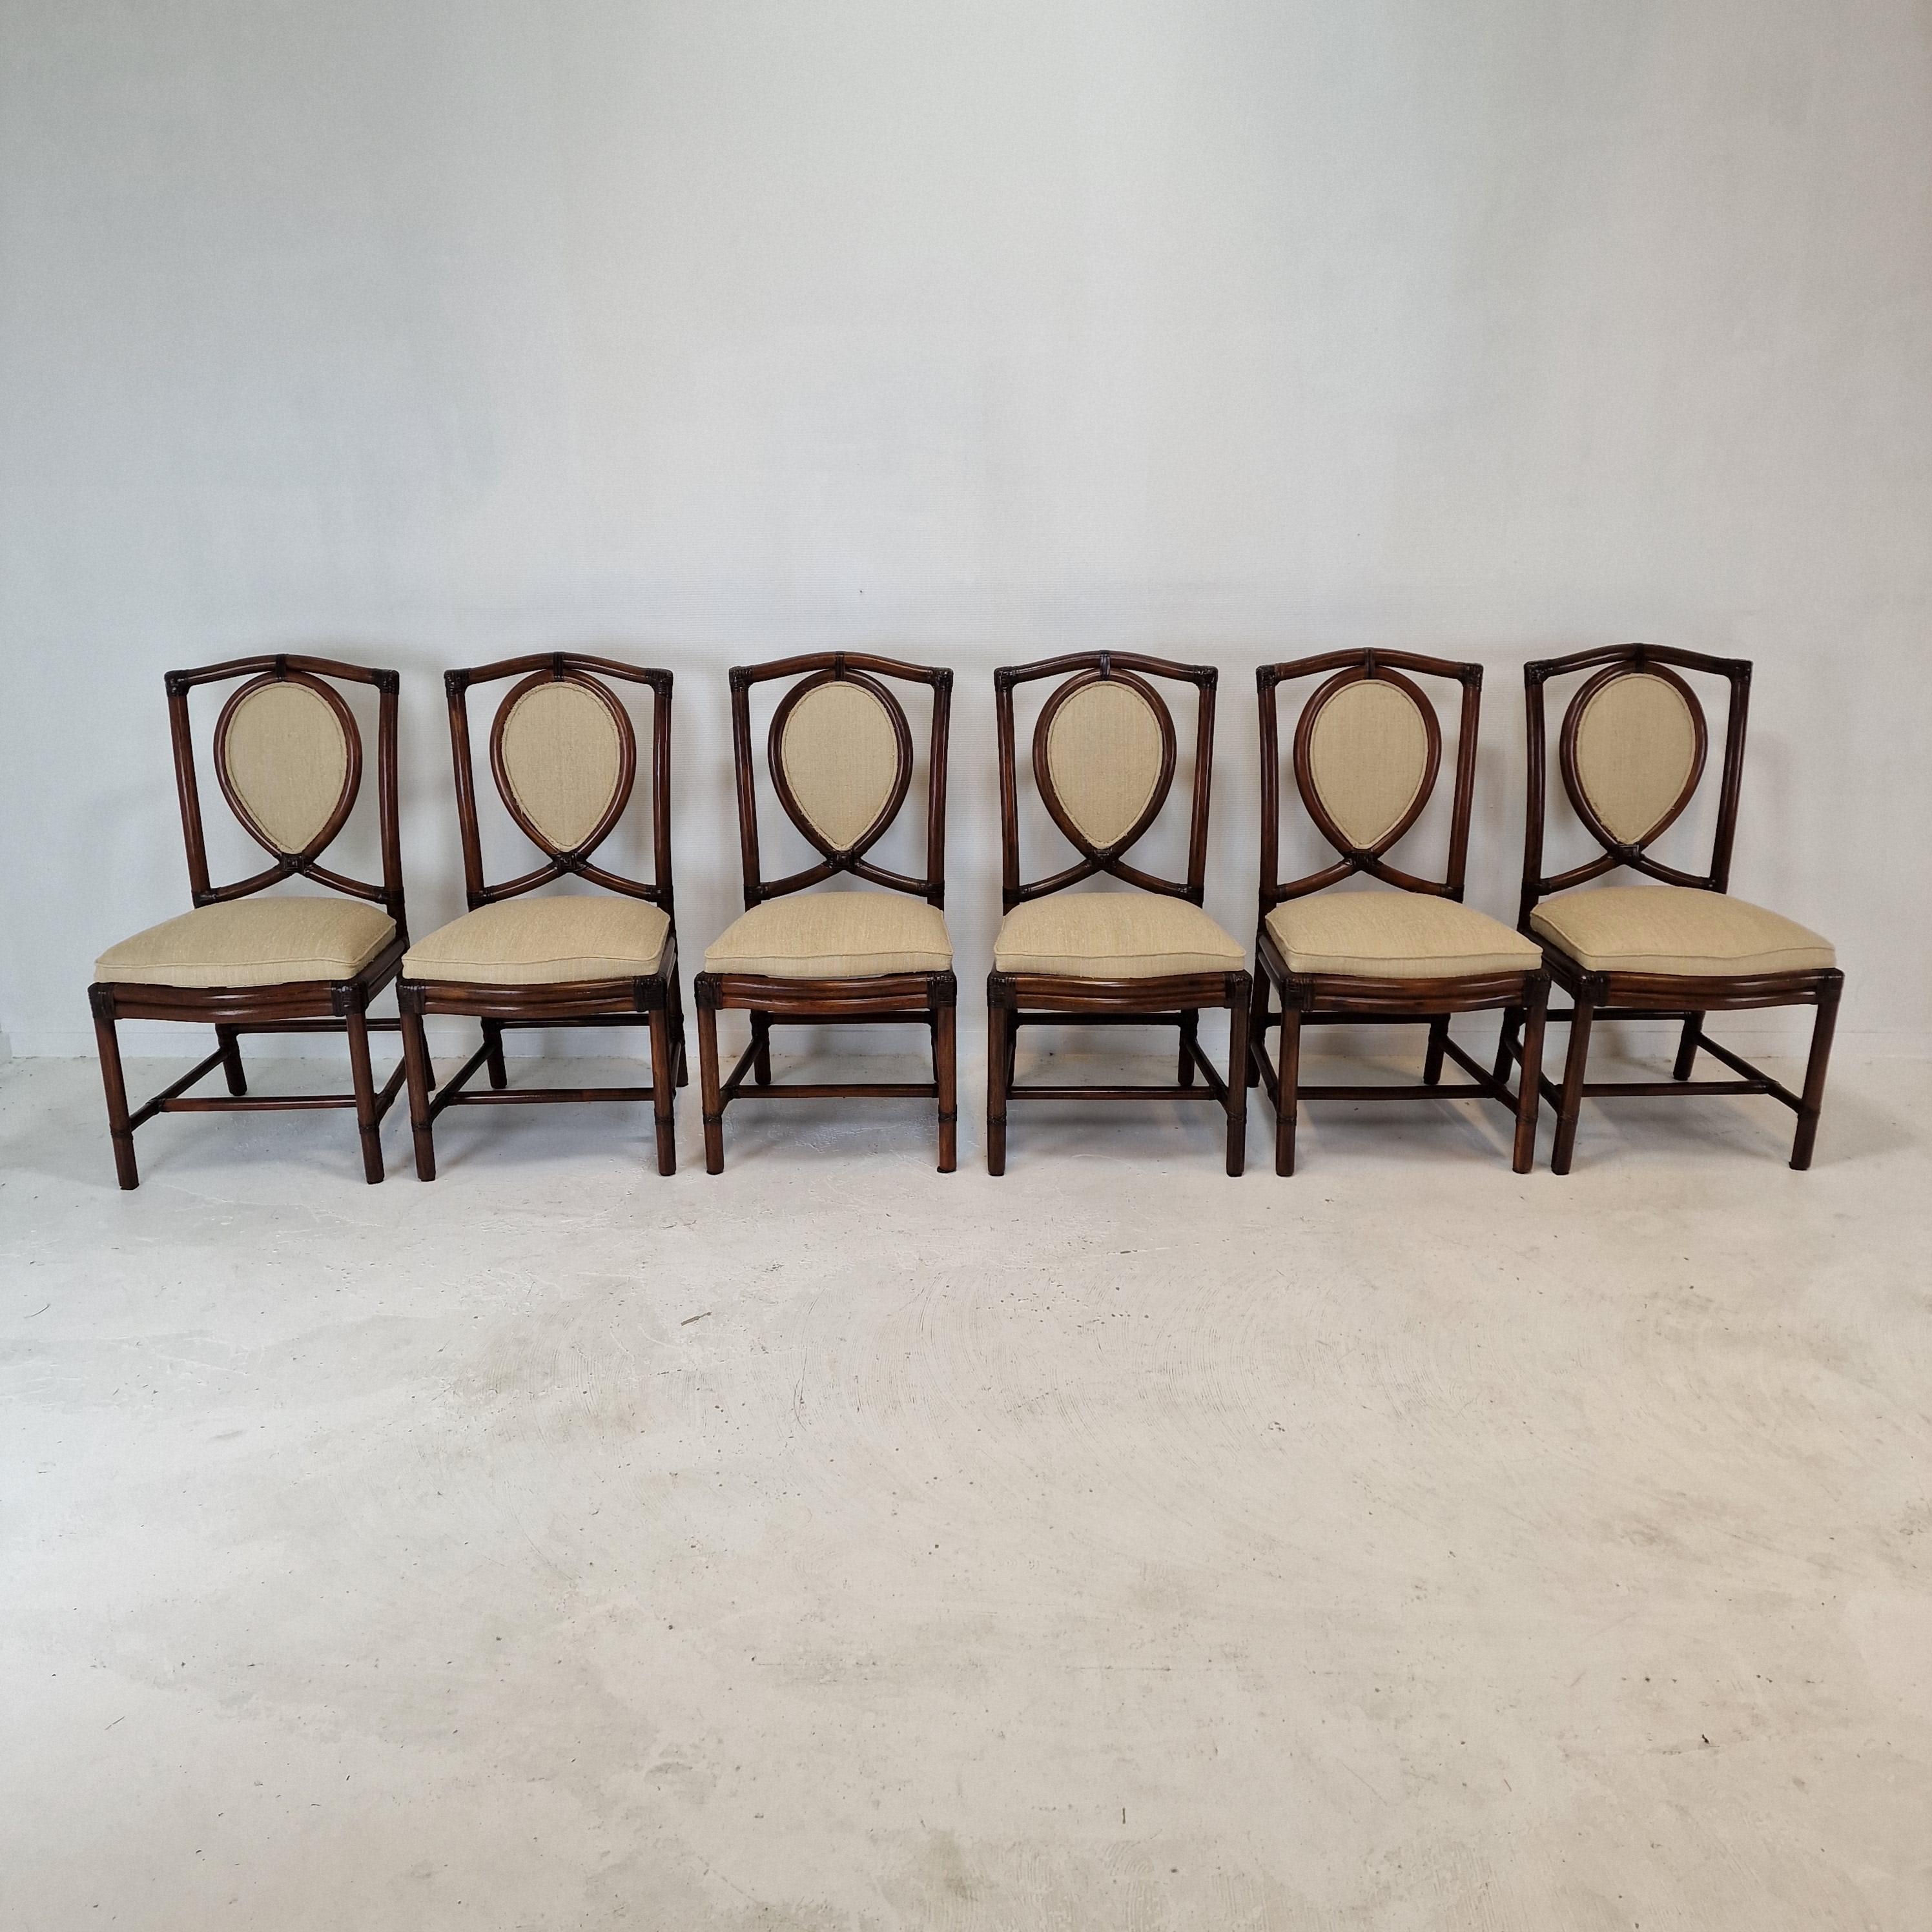 Sehr schöner Satz von 6 italienischen Esszimmerstühlen, hergestellt in den 70er Jahren von Gasparucci Italo.

Sie sind aus Bambus gefertigt.
Die Stühle sind in gutem Vintage-Zustand.

Wir arbeiten mit professionellen Packern und Spediteuren zusammen